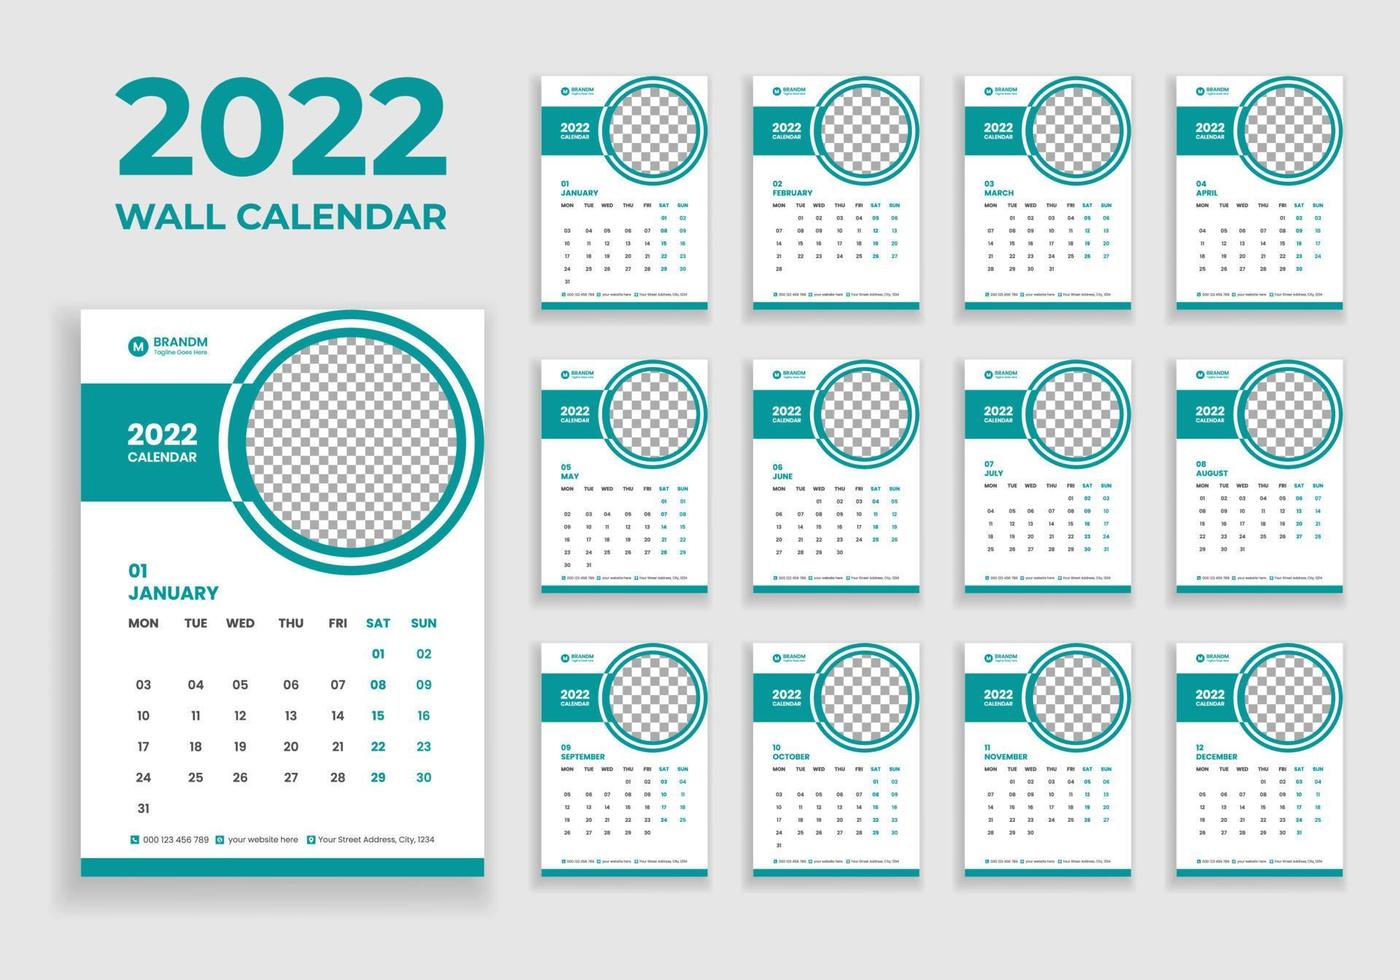 wandkalender ontwerp 2022. wandkalender ontwerp 2022. nieuwjaarskalender ontwerp 2022. week begint op maandag. sjabloon voor jaarkalender 2022 vector